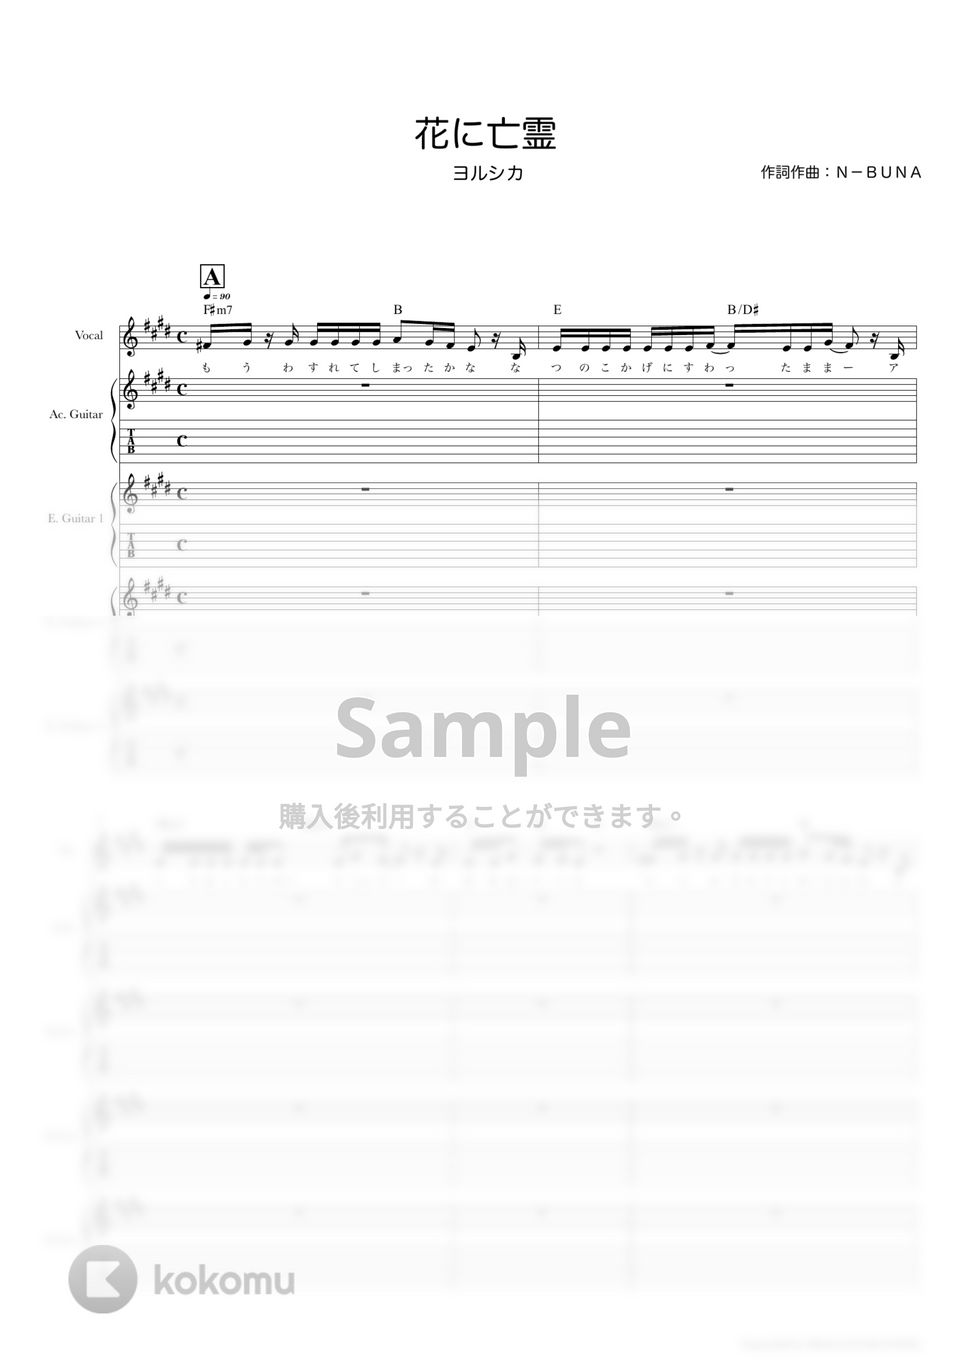 ヨルシカ - 花に亡霊 (ギタースコア・歌詞・コード付き) by TRIAD GUITAR SCHOOL